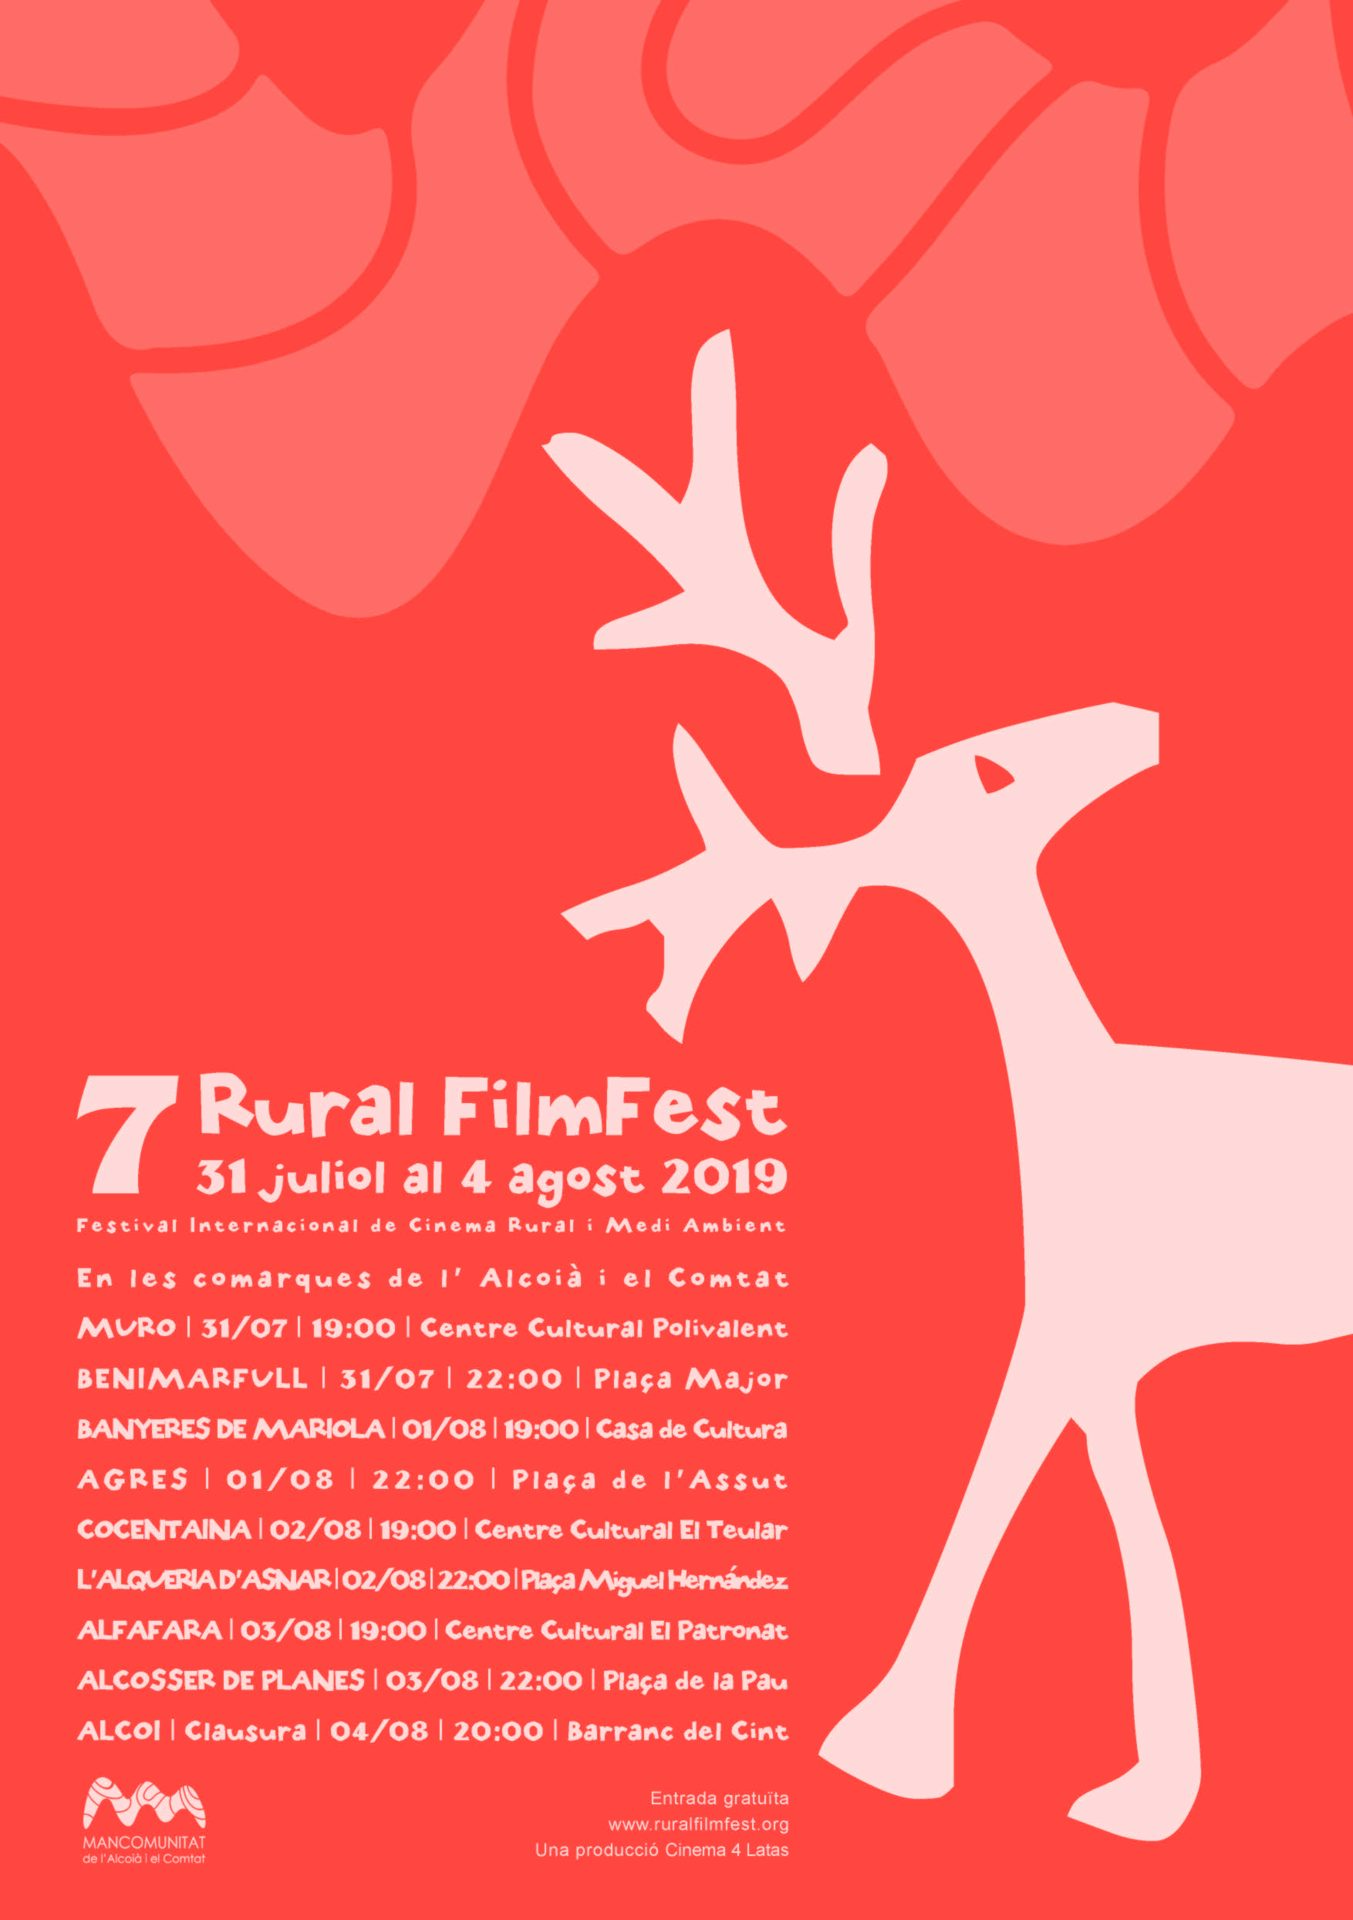 rural filmfest festival alcoià comtat